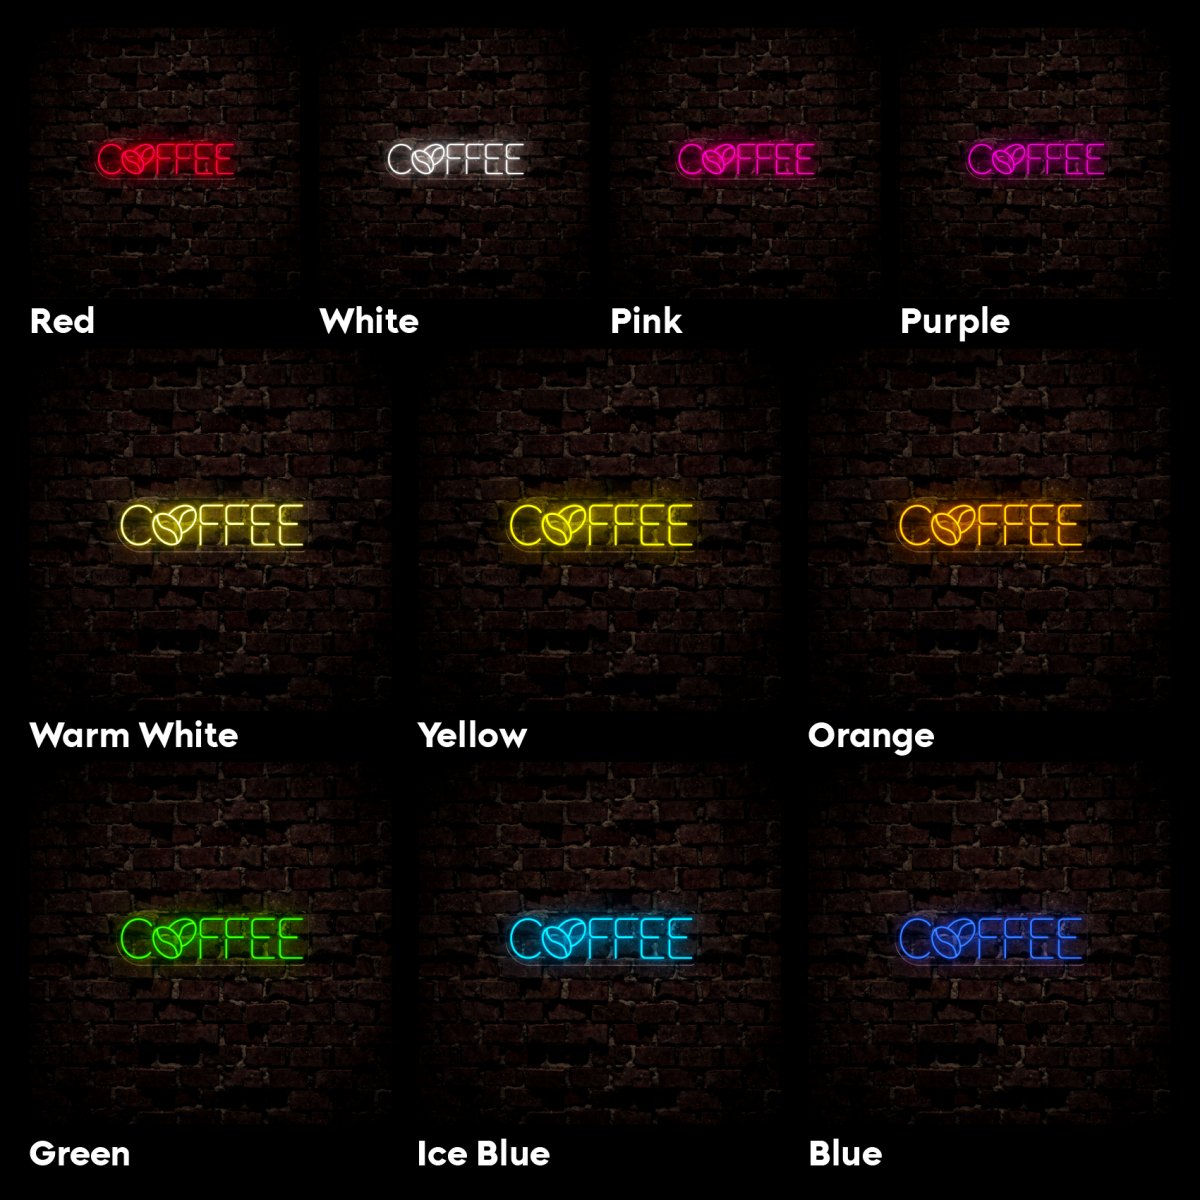 Coffee Neon Sign - Reels Custom